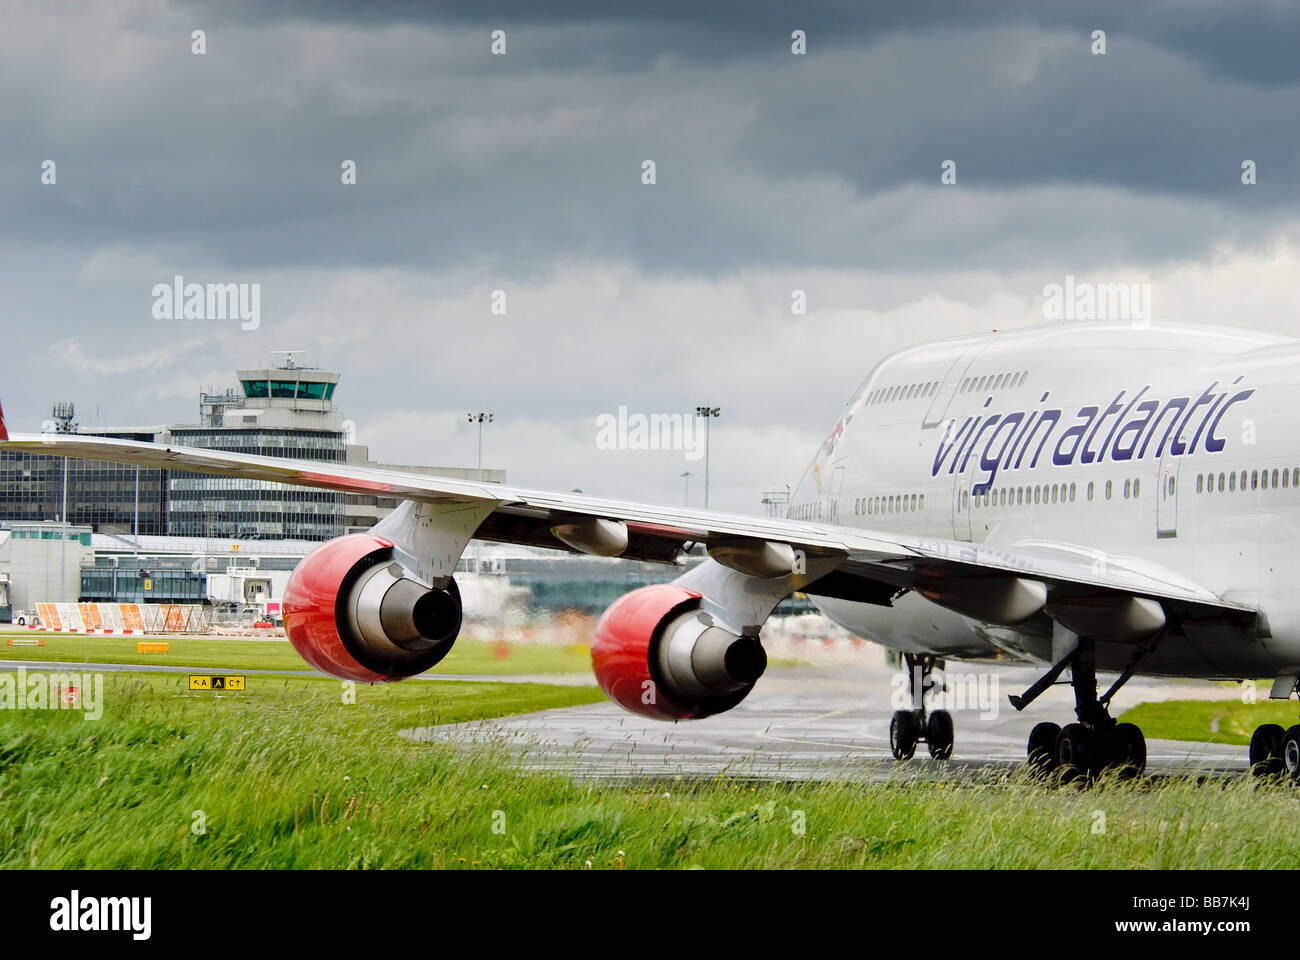 Un Boeing 747 de Virgin Atlantic Jumbojet le roulage à l'aéroport international de Manchester vers le terminal principal et la tour de contrôle. Banque D'Images